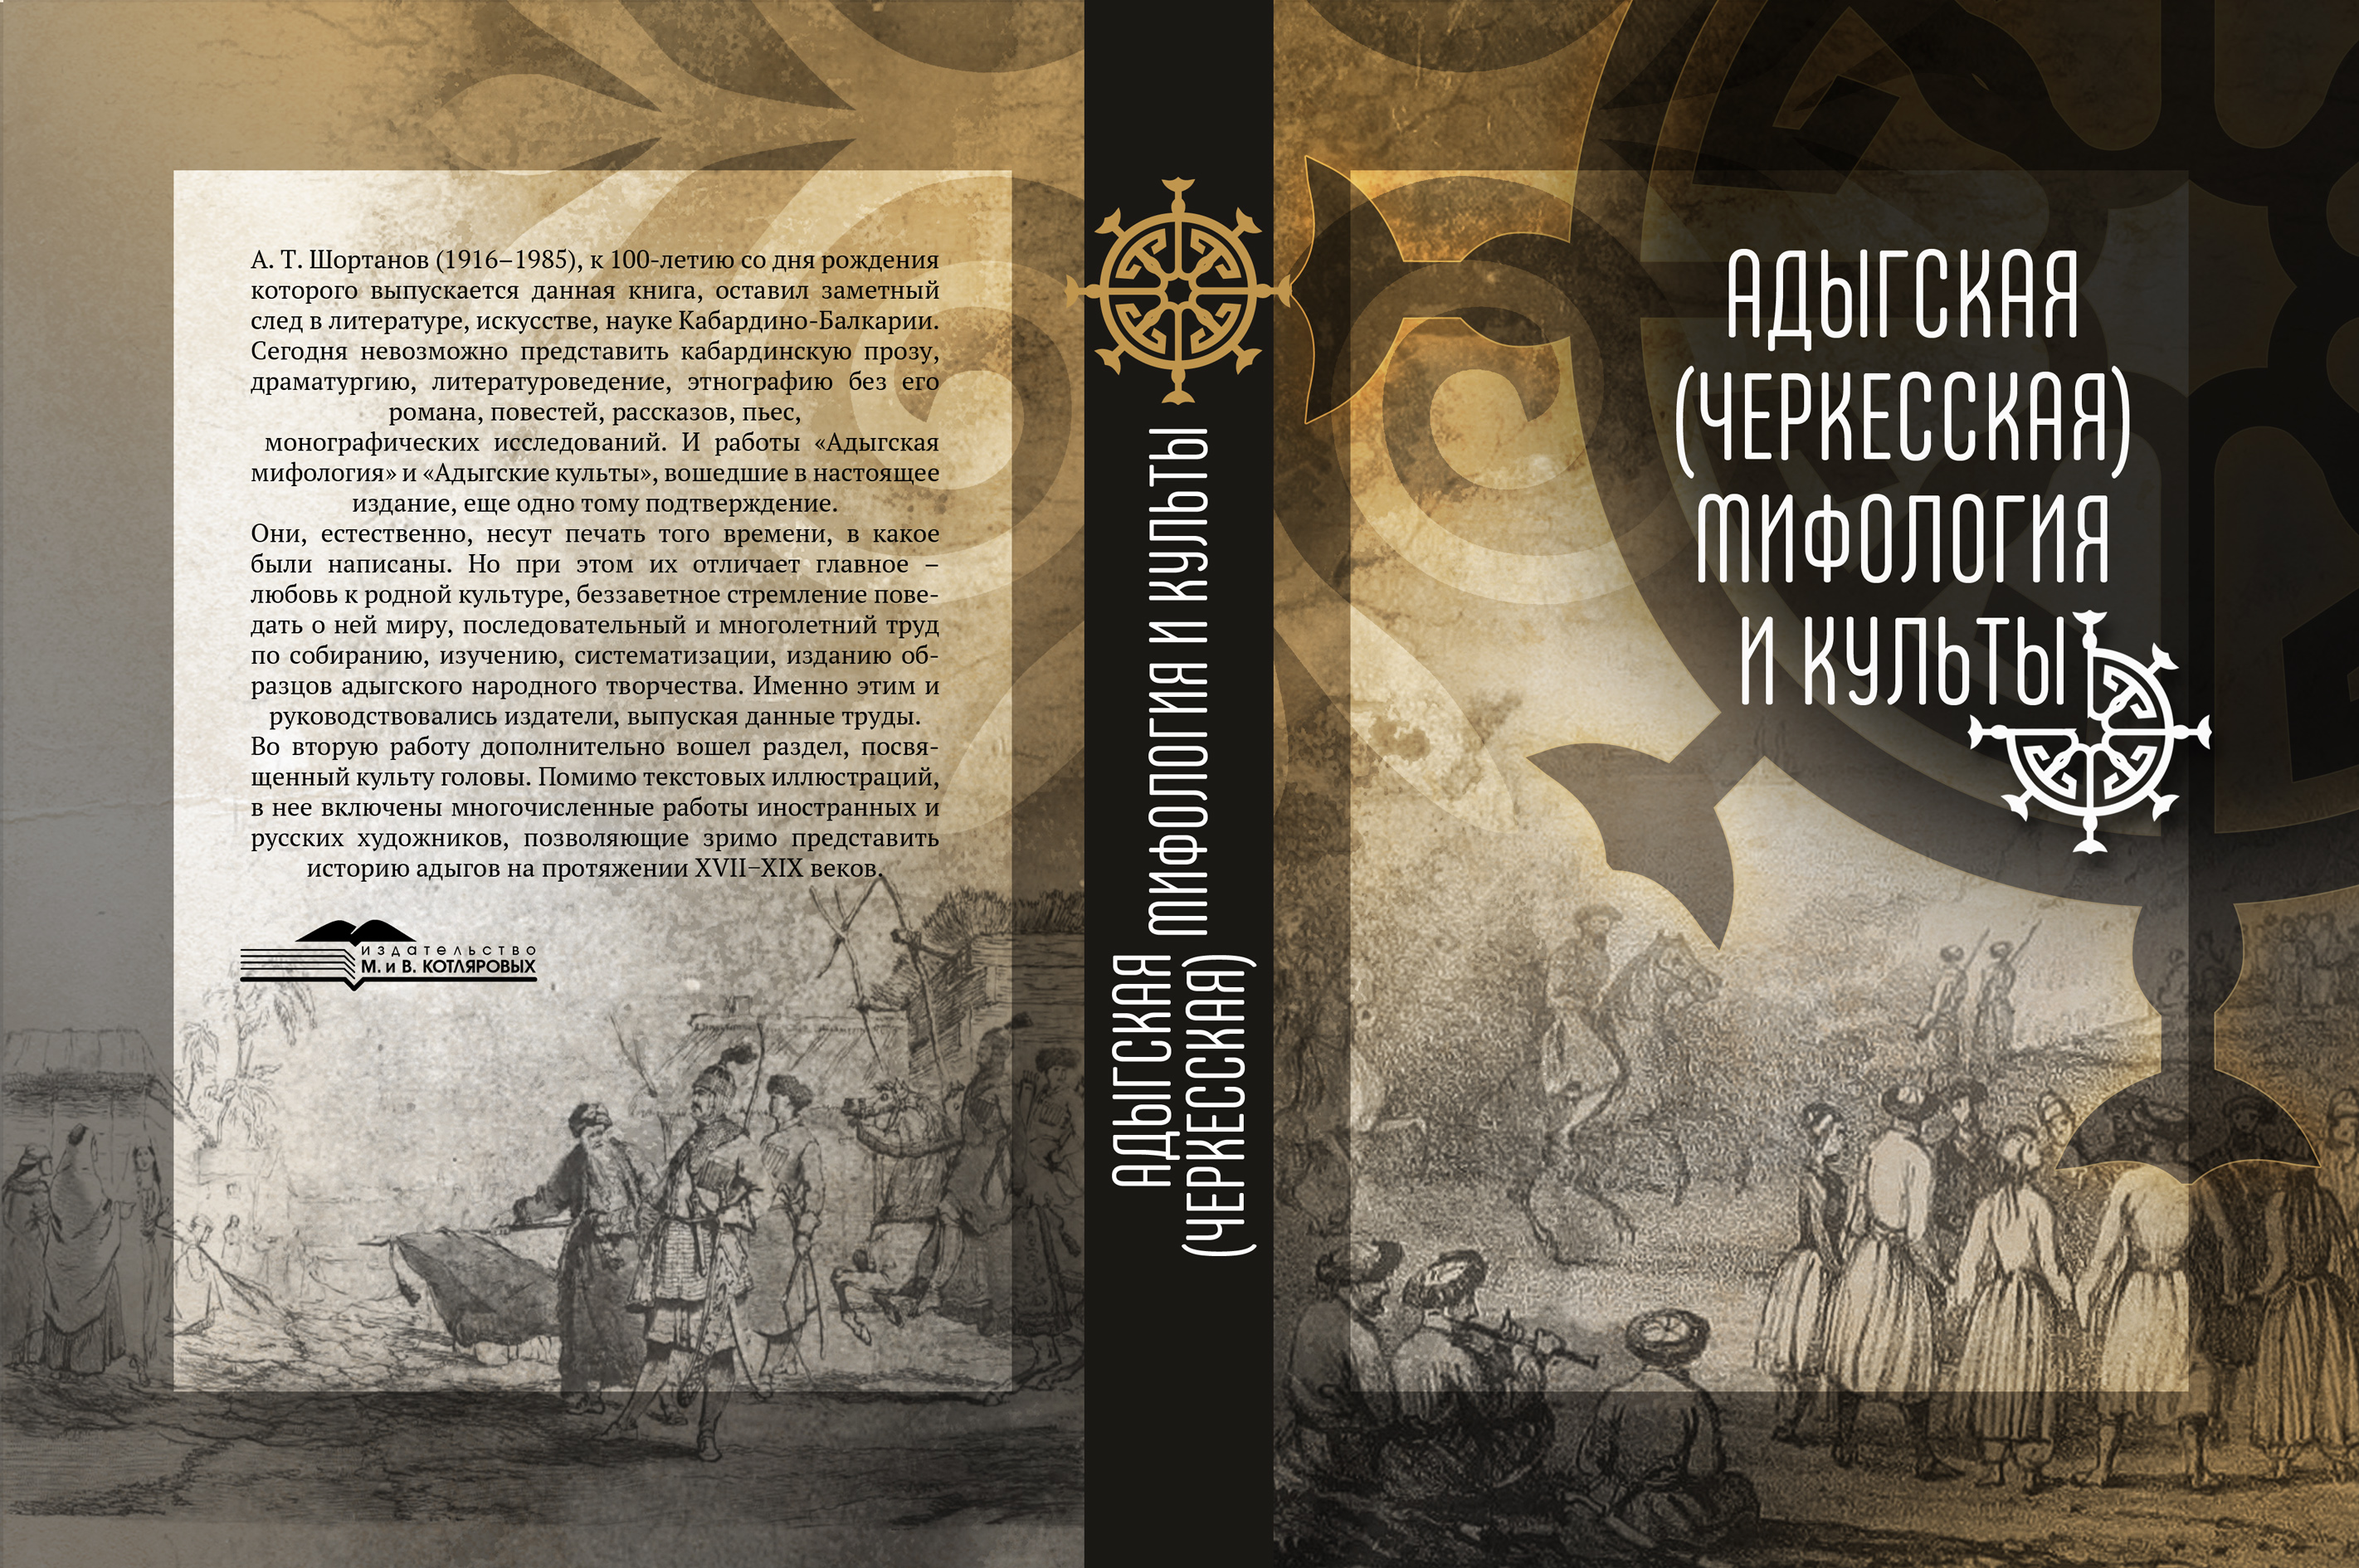 Книга об адыгской мифологии и культах издана в Нальчике